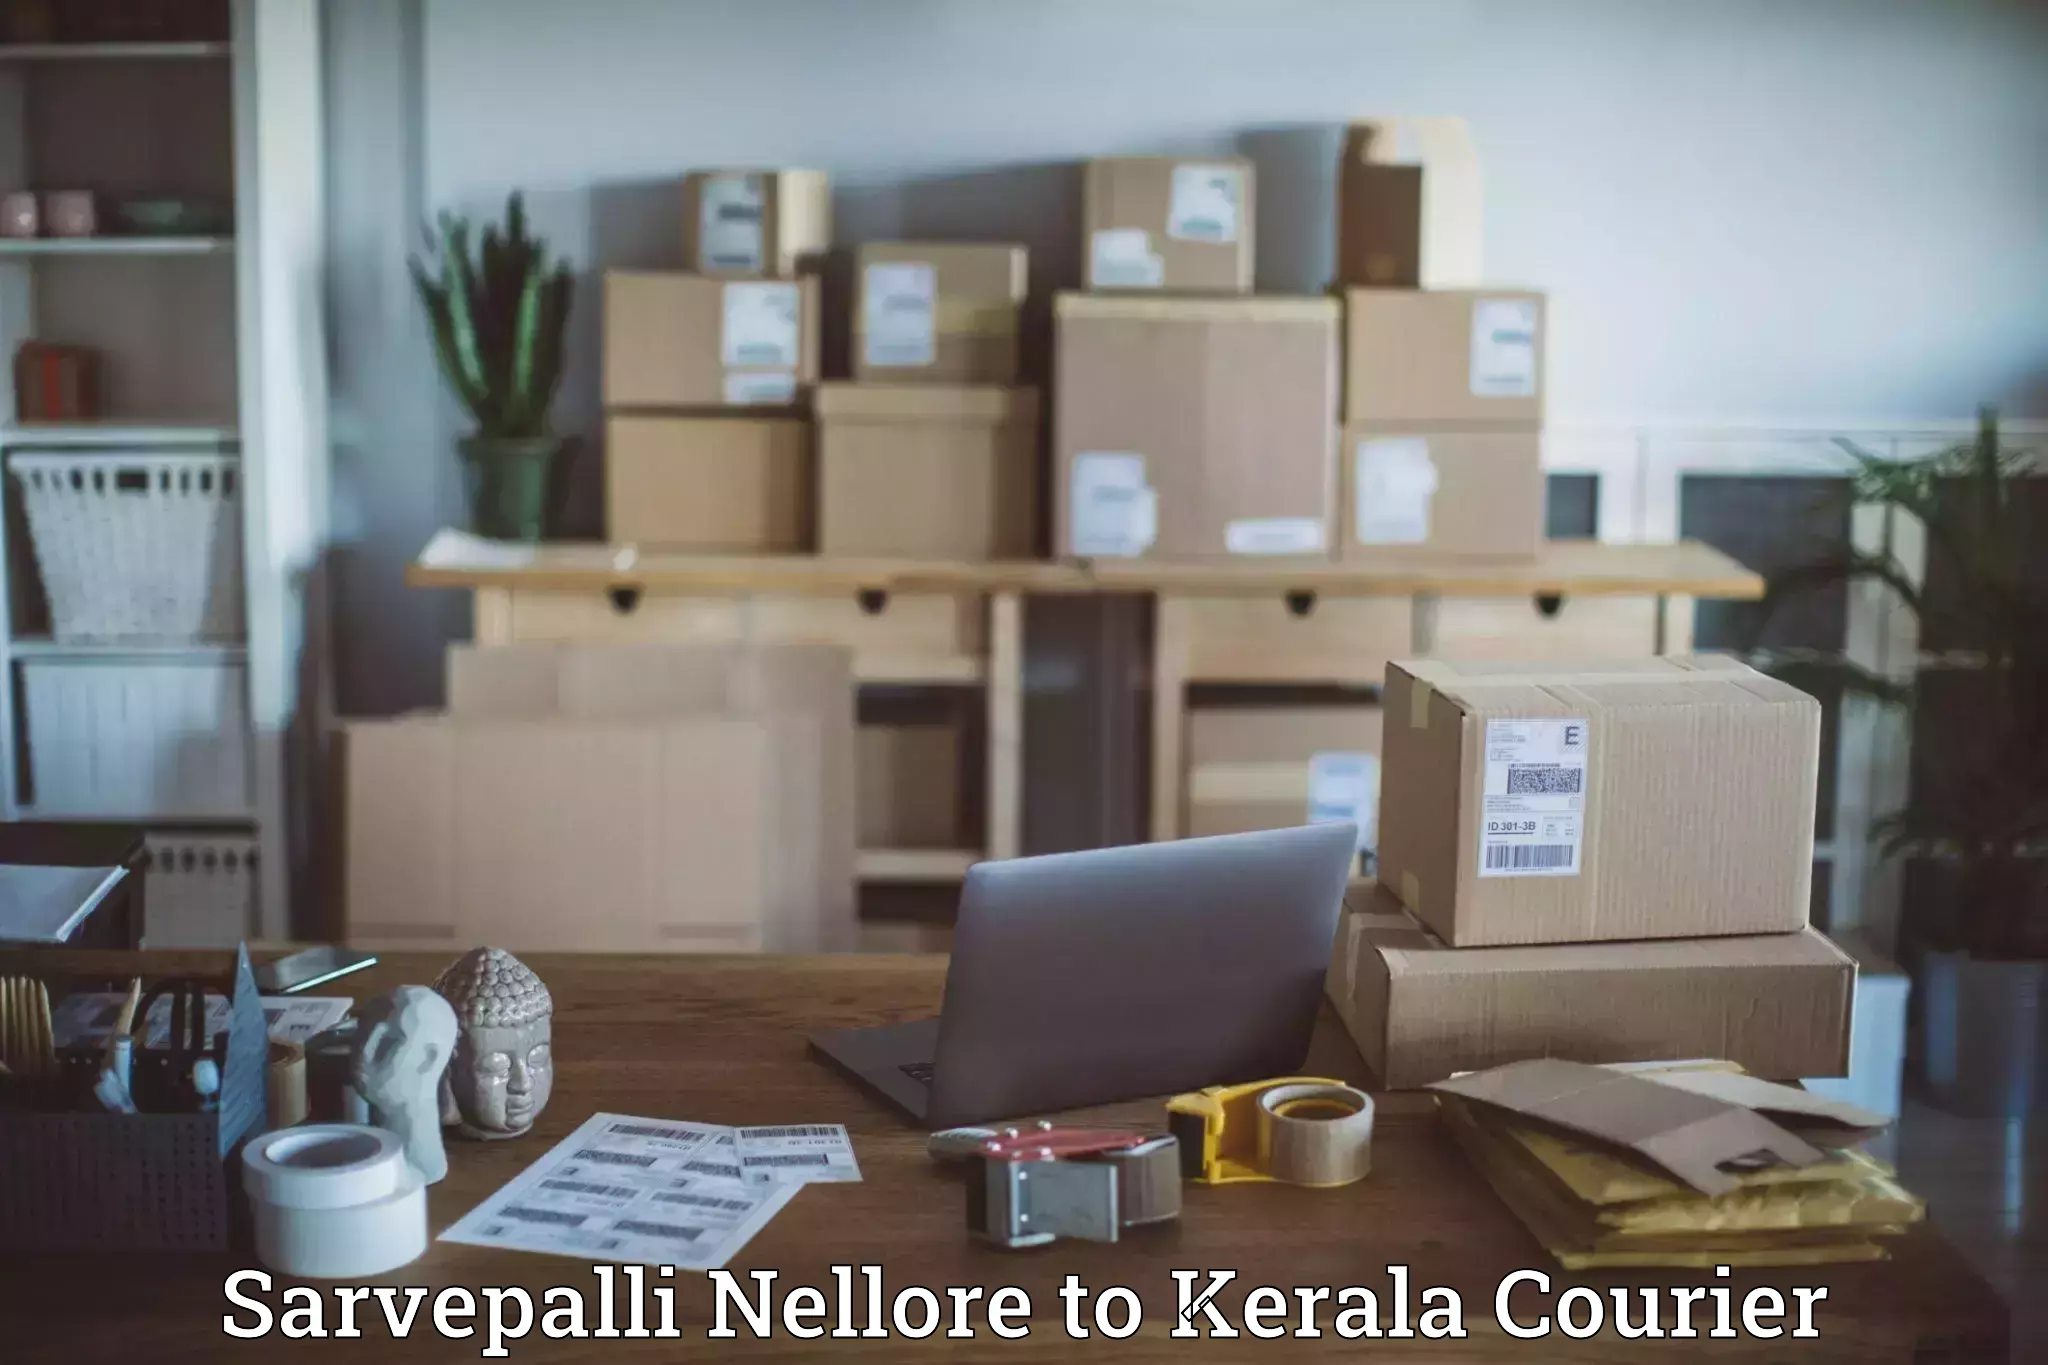 Customer-centric shipping Sarvepalli Nellore to IIIT Kottayam